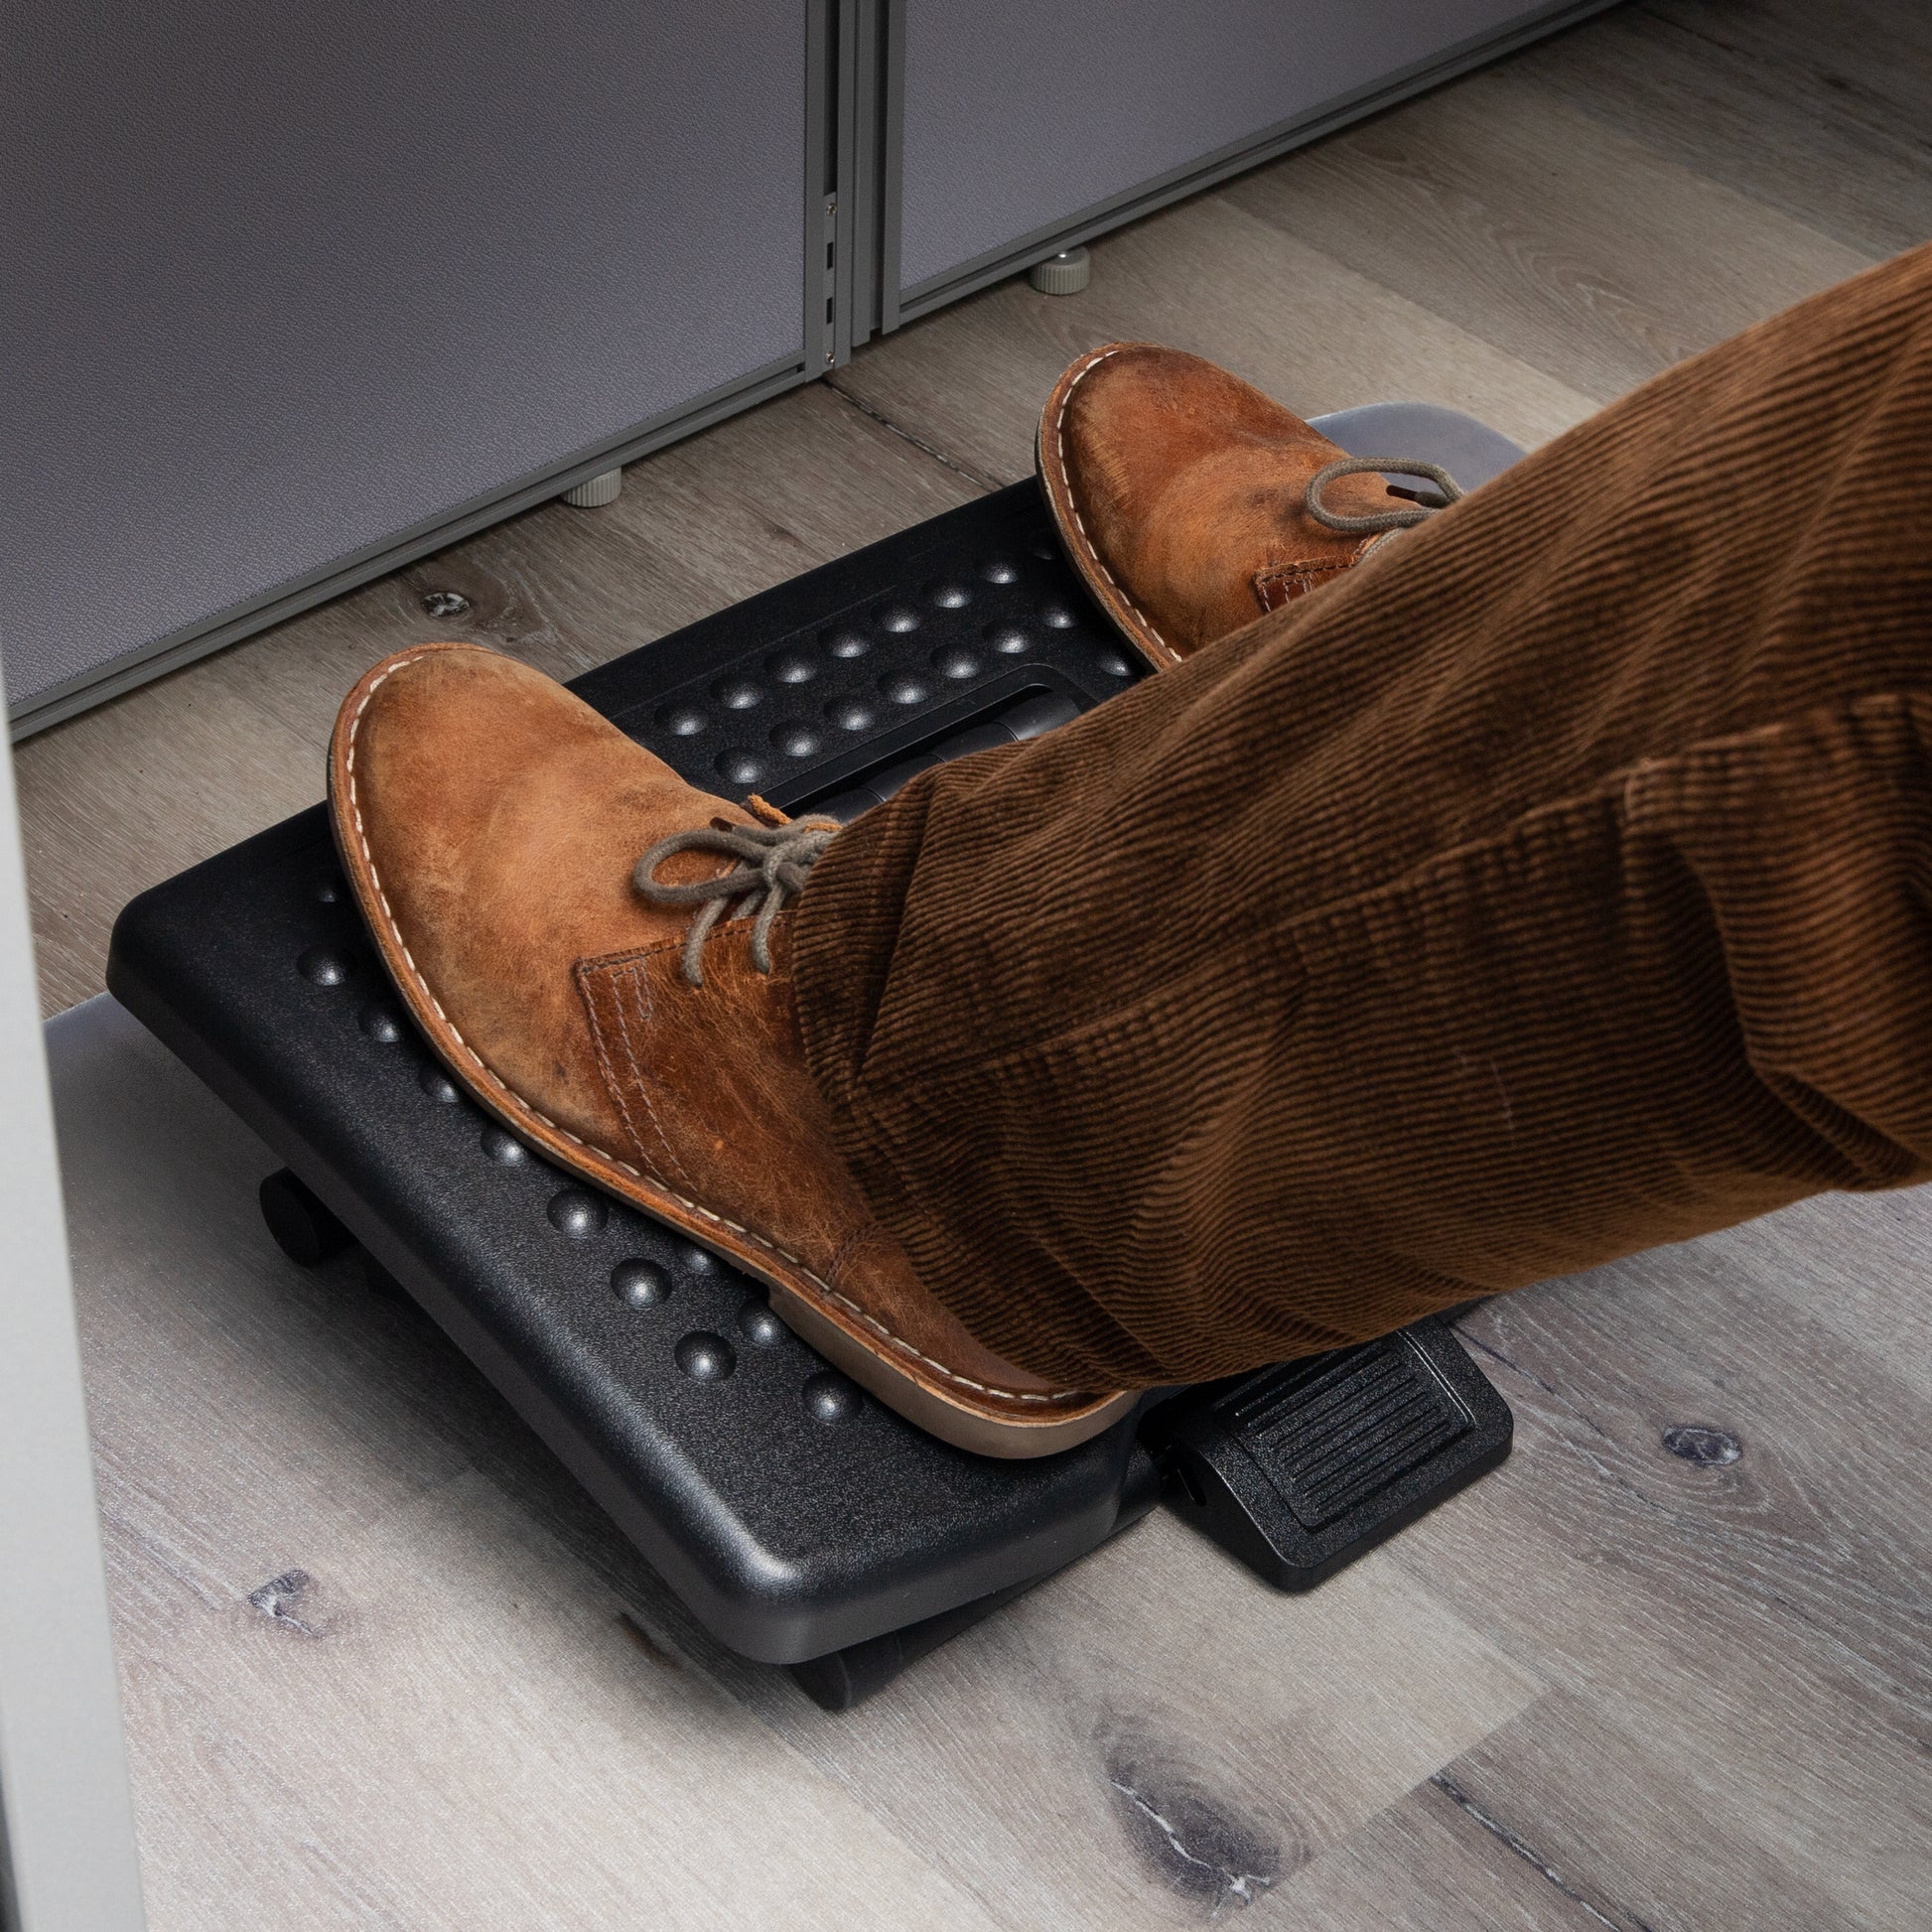 Adjustable under Desk Footrest, Foot Rest for under Desk at Work with Mas